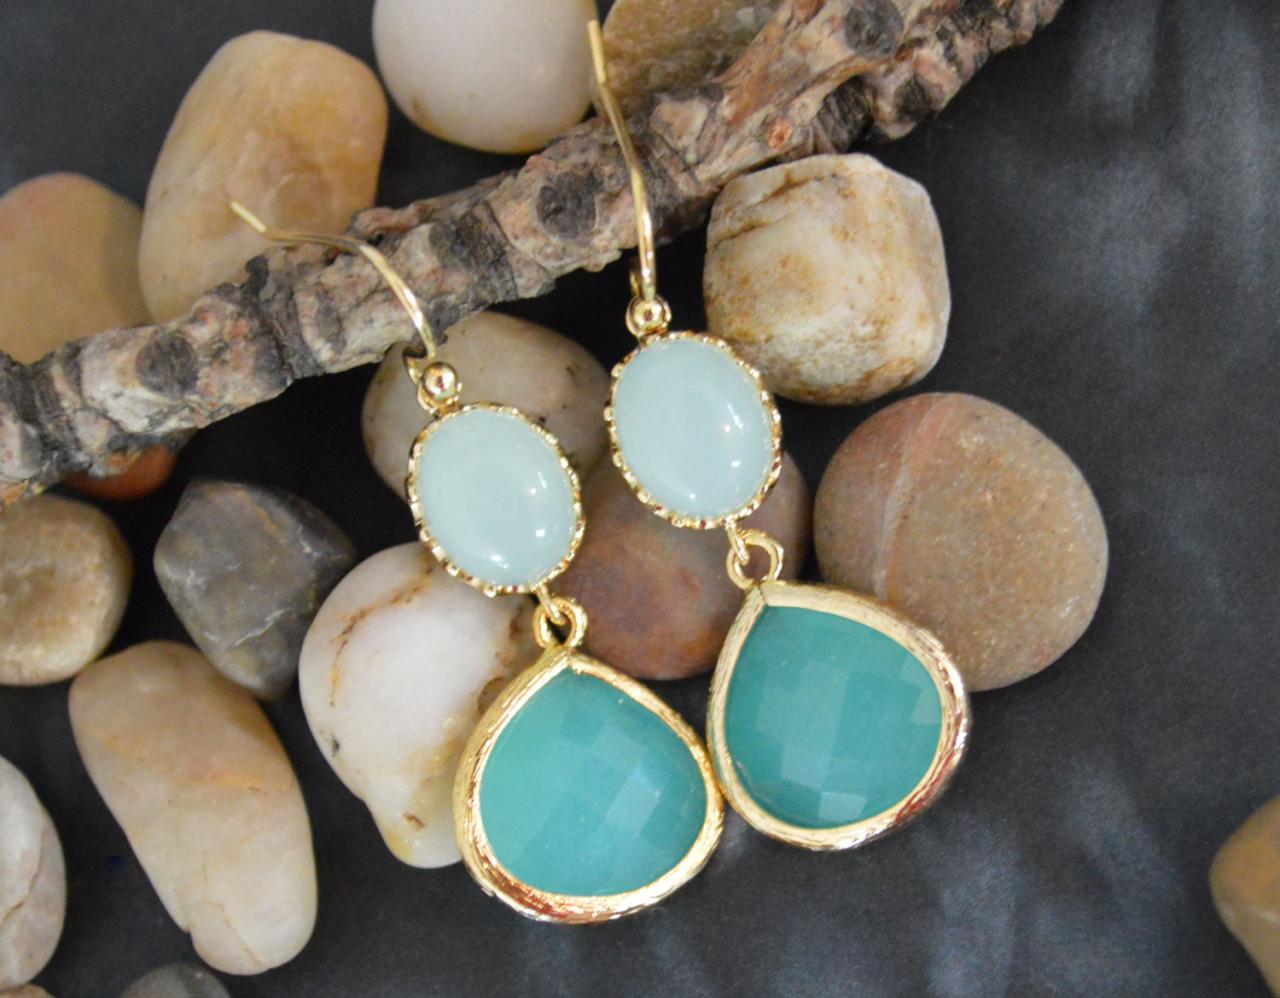 Dangle drop earrings, Glass mint earrings, Bezel set mint blue drop earrings, Gold plated /Bridesmaid gifts/Everyday jewelry/